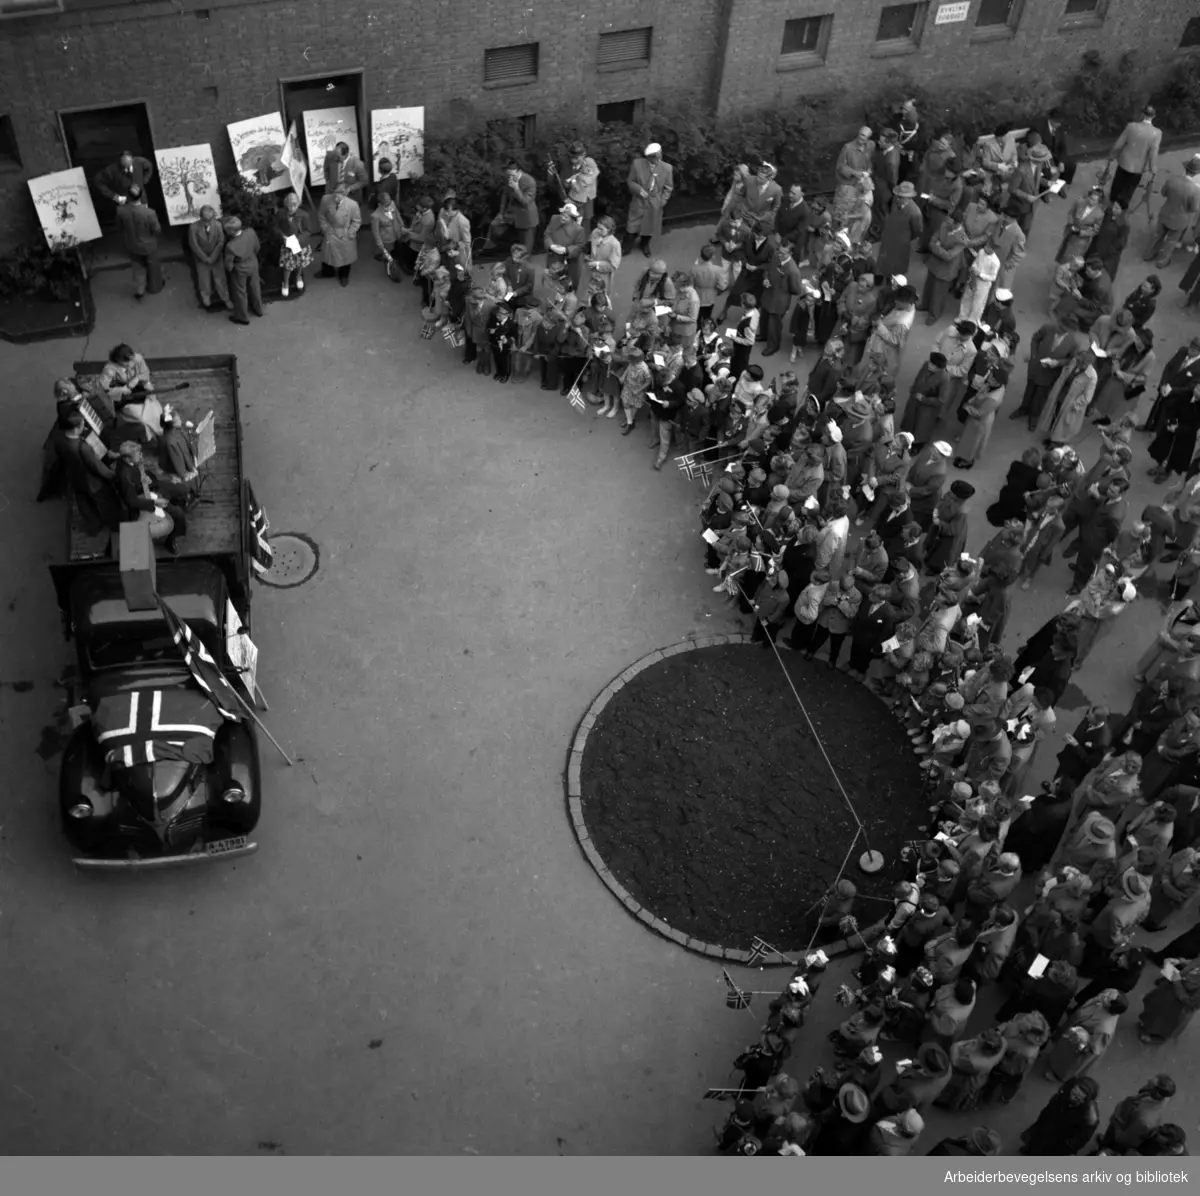 Underholdning og fest fra lastebil på Tøyenhus i Oslo. 17. mai 1953.